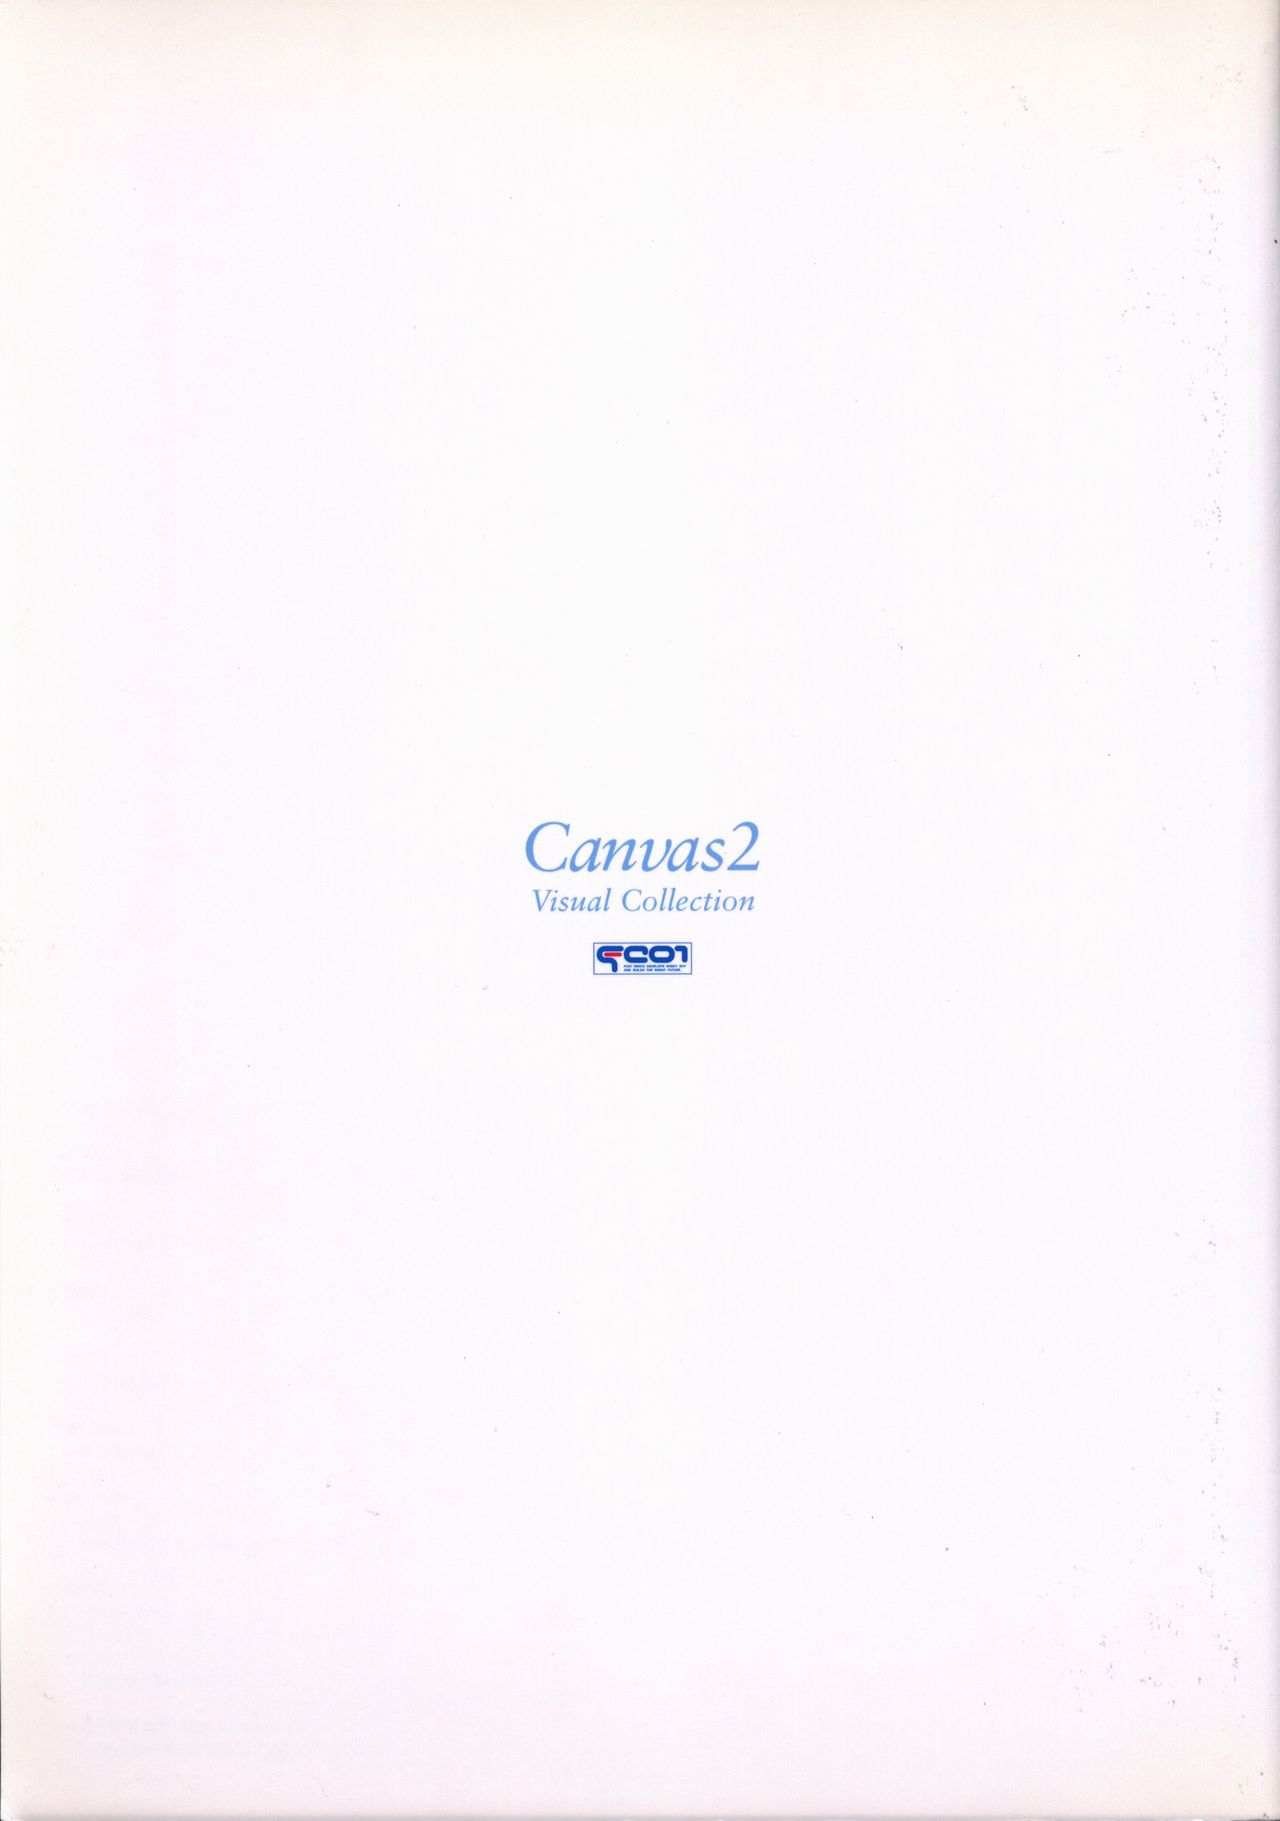 CANVAS2 ビジュアルコレクション